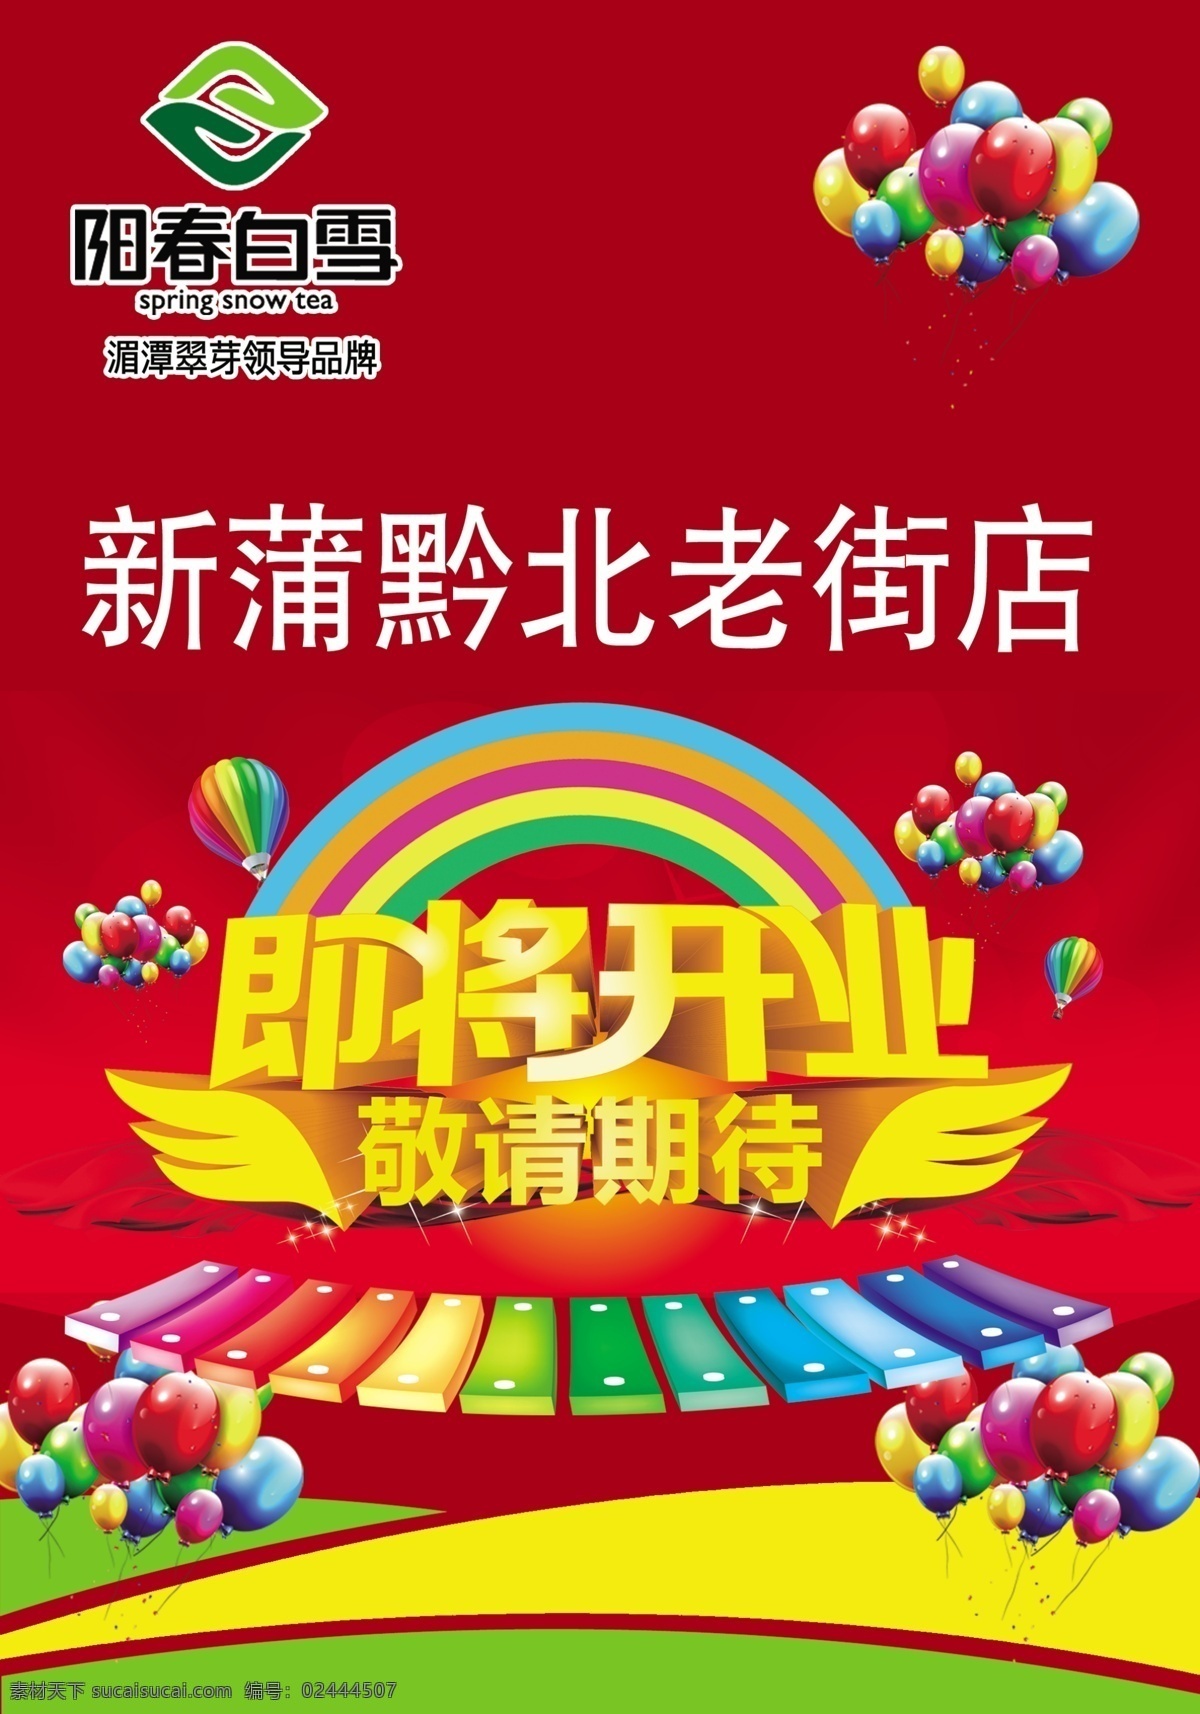 盛大开业 开业海报 即将开业 气球 红色背景 彩虹 热气球 翅膀